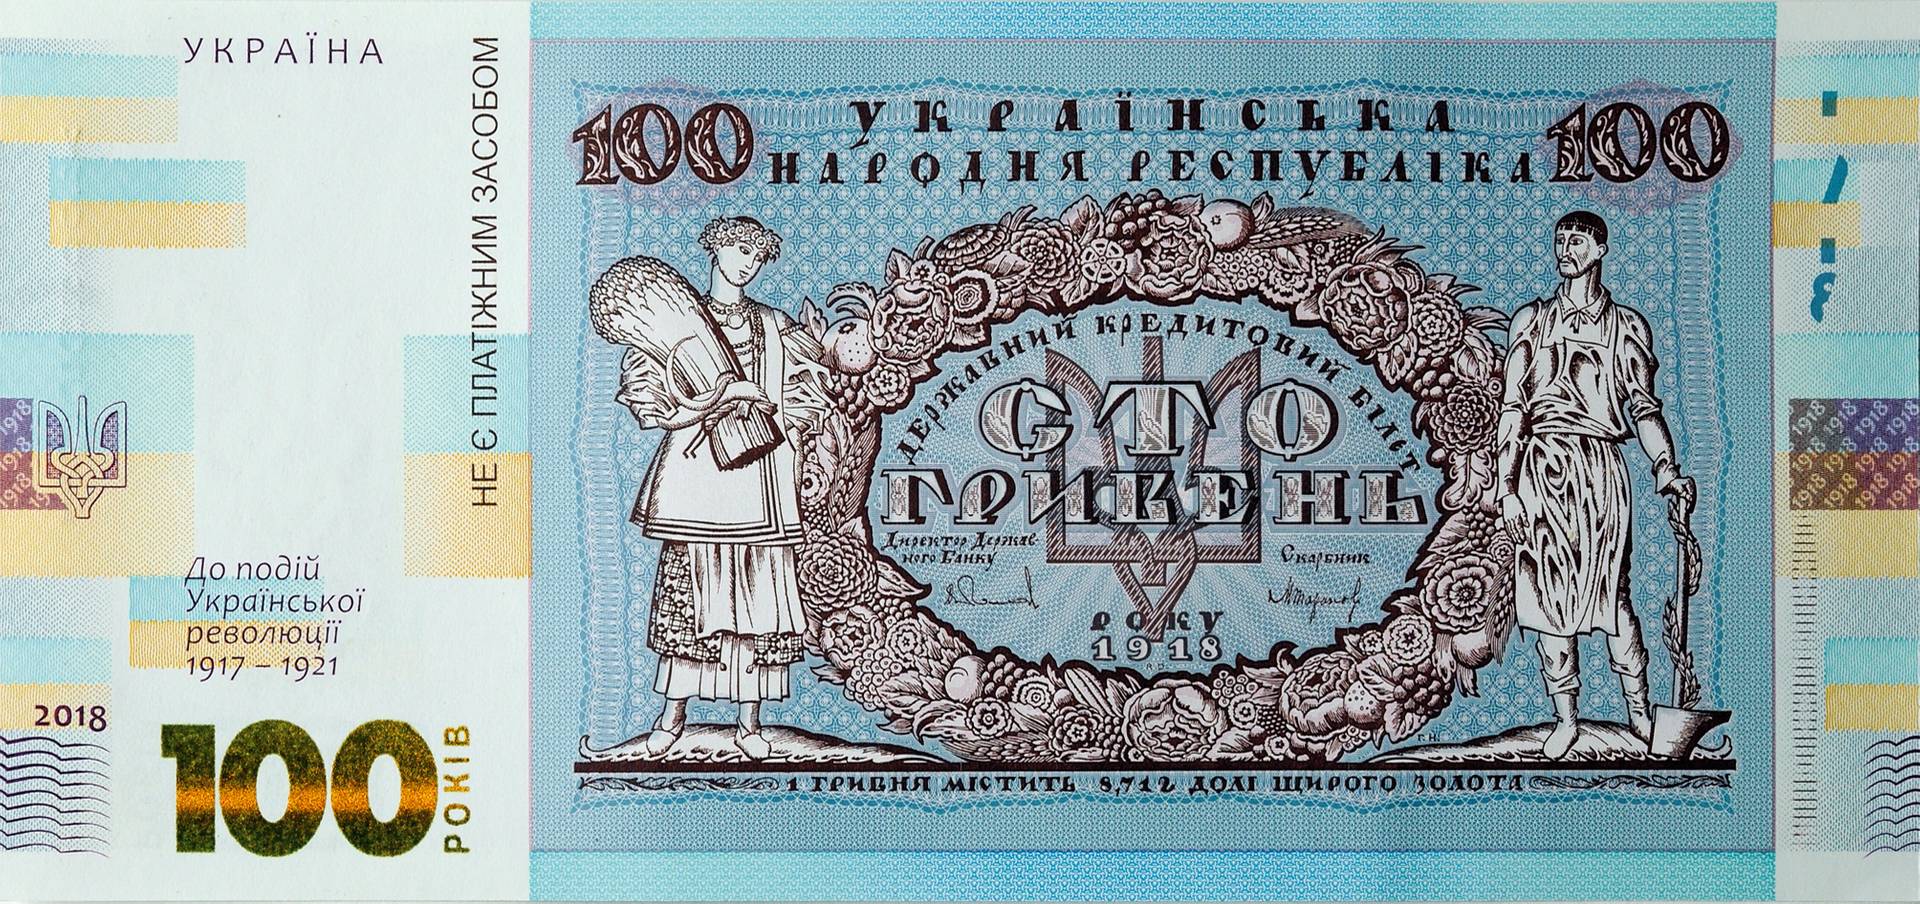 Нацбанк выпустит сувенирную банкноту времен УНР - фото 1